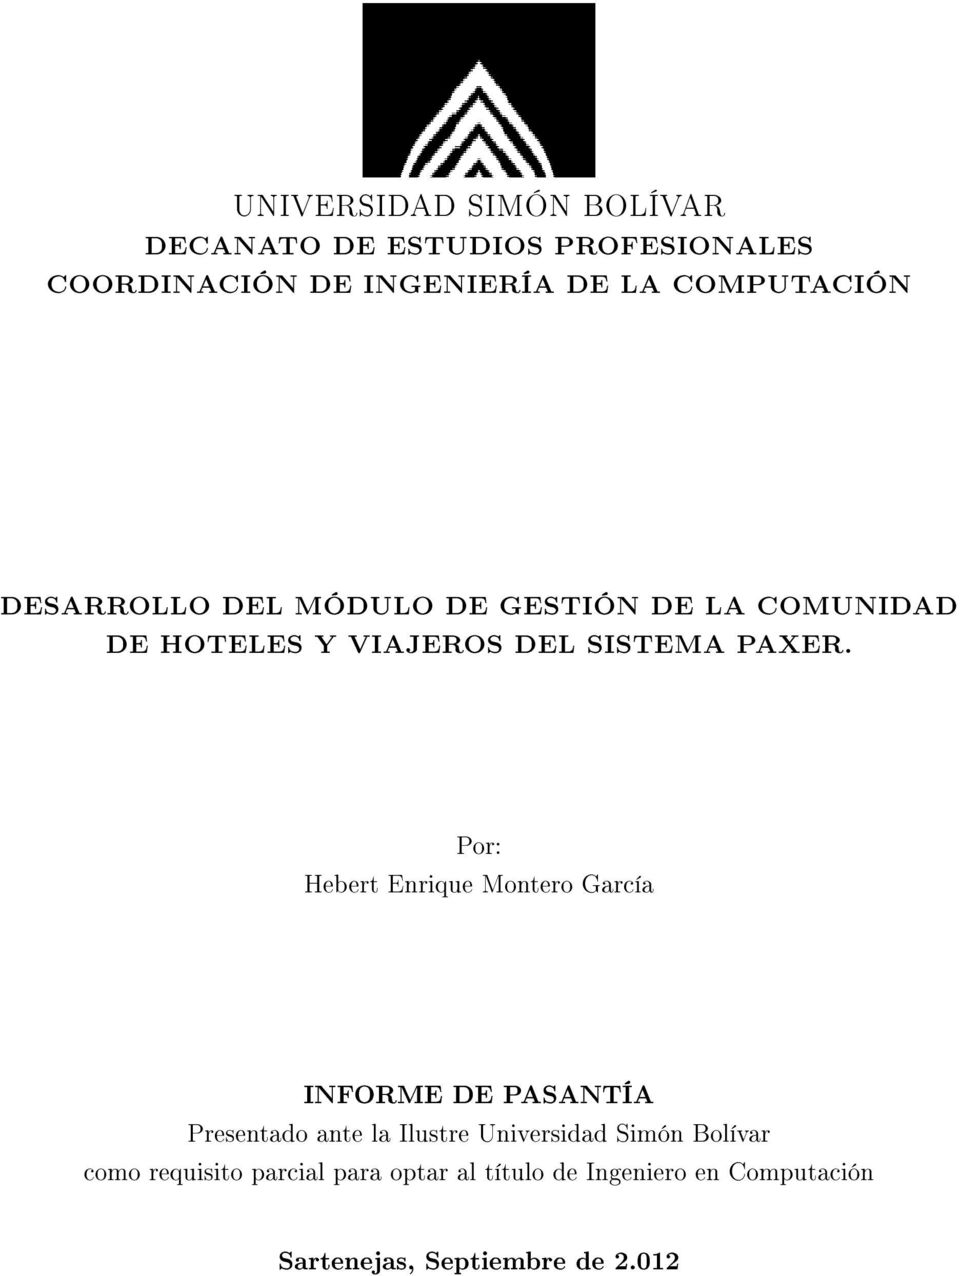 Por: Hebert Enrique Montero García INFORME DE PASANTÍA Presentado ante la Ilustre Universidad Simón